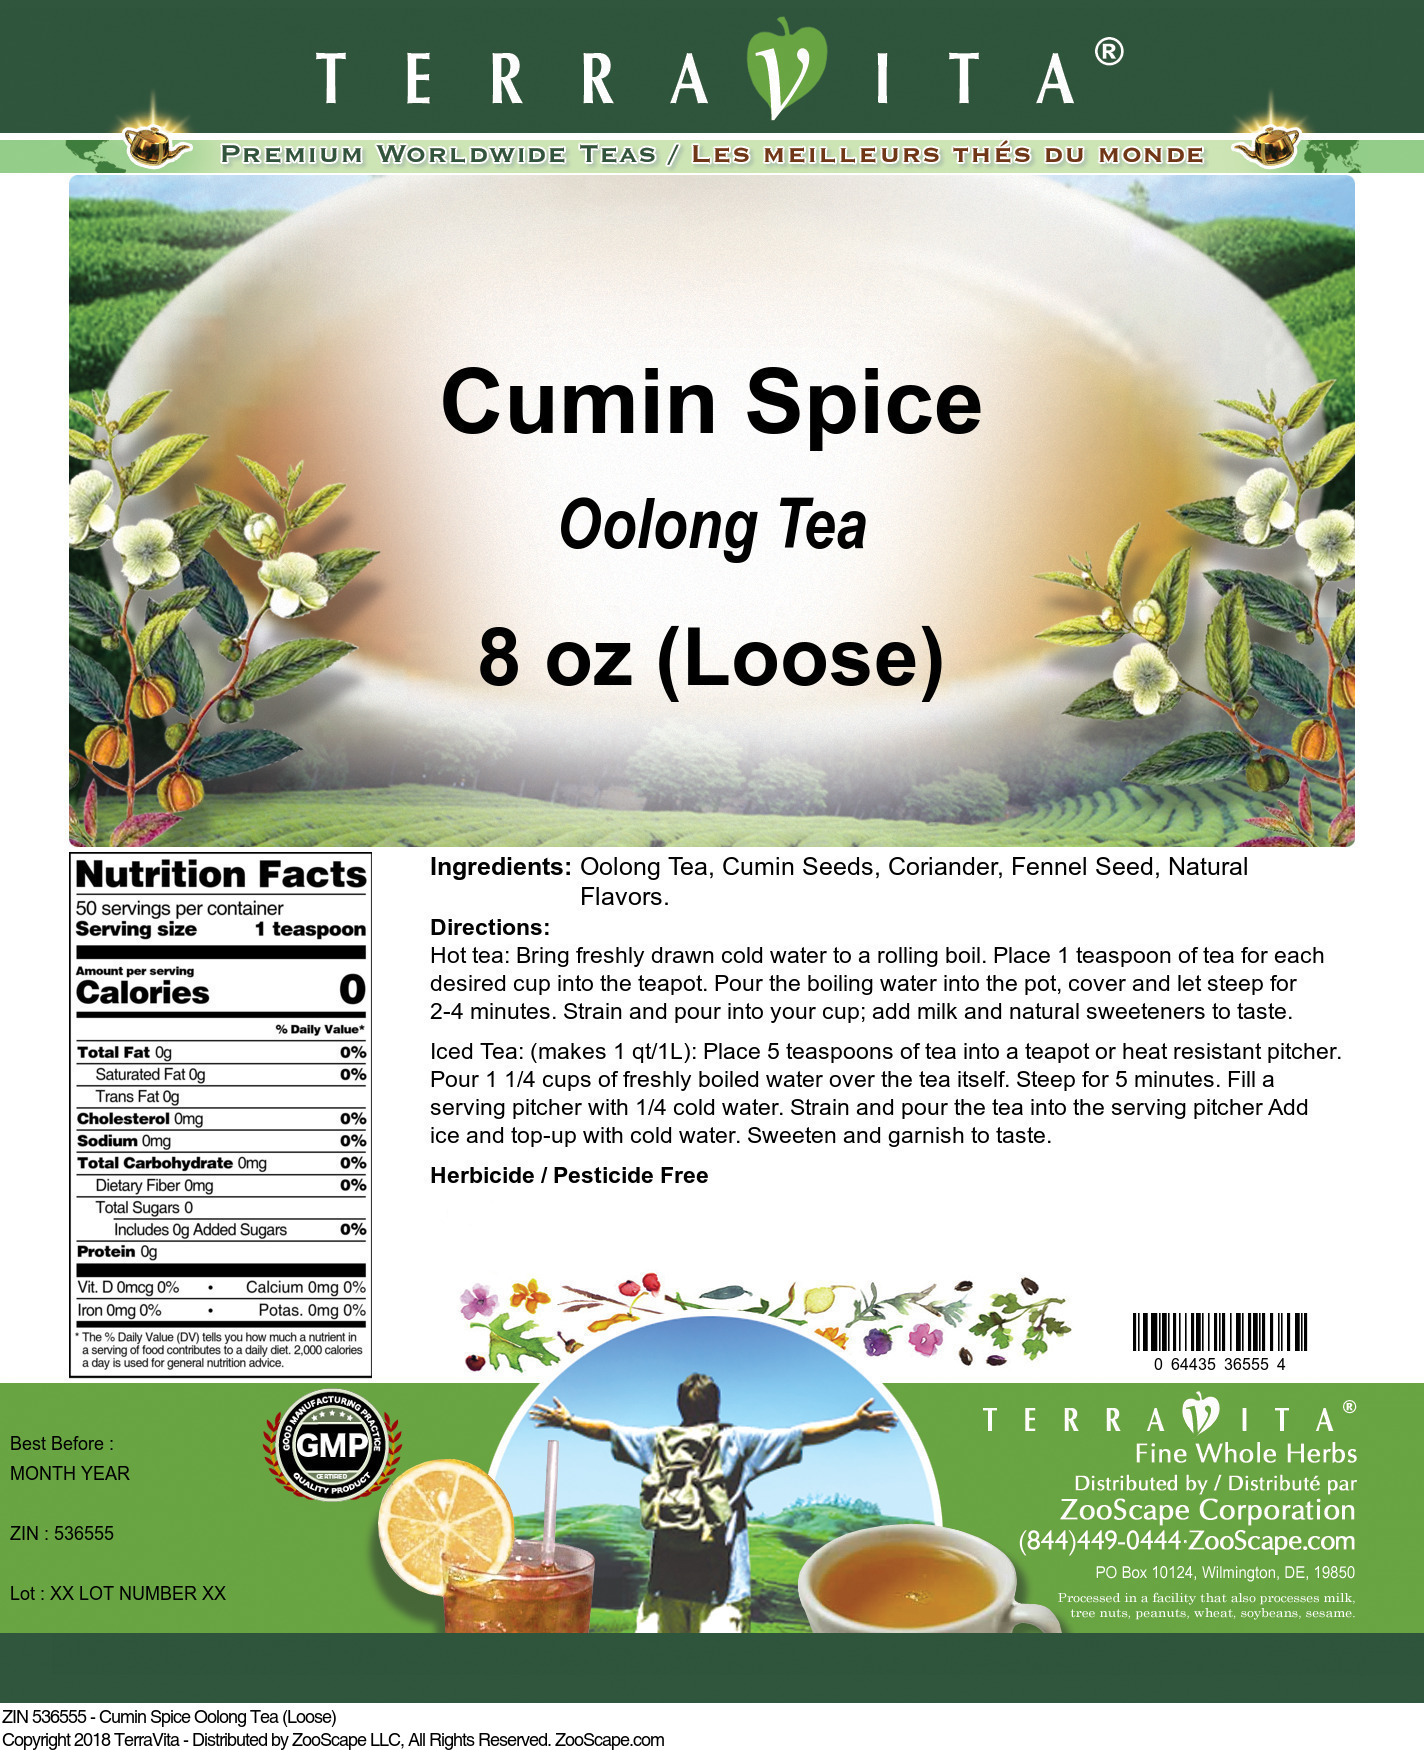 Cumin Spice Oolong Tea (Loose) - Label